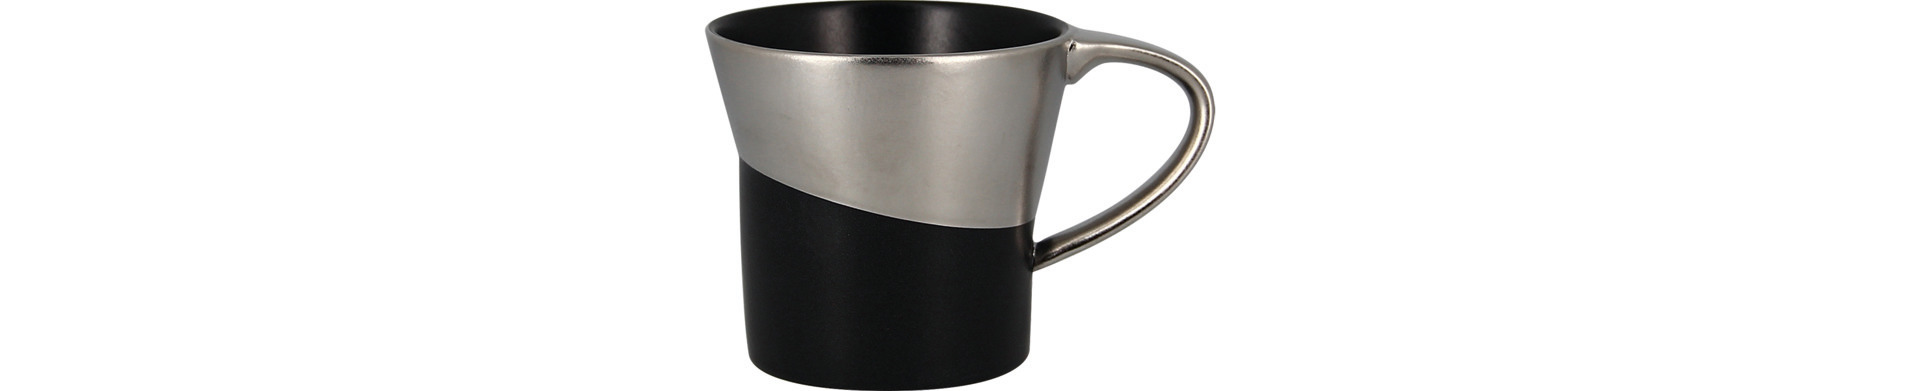 Kaffeetasse 83 mm / 0,23 l schwarz / silber